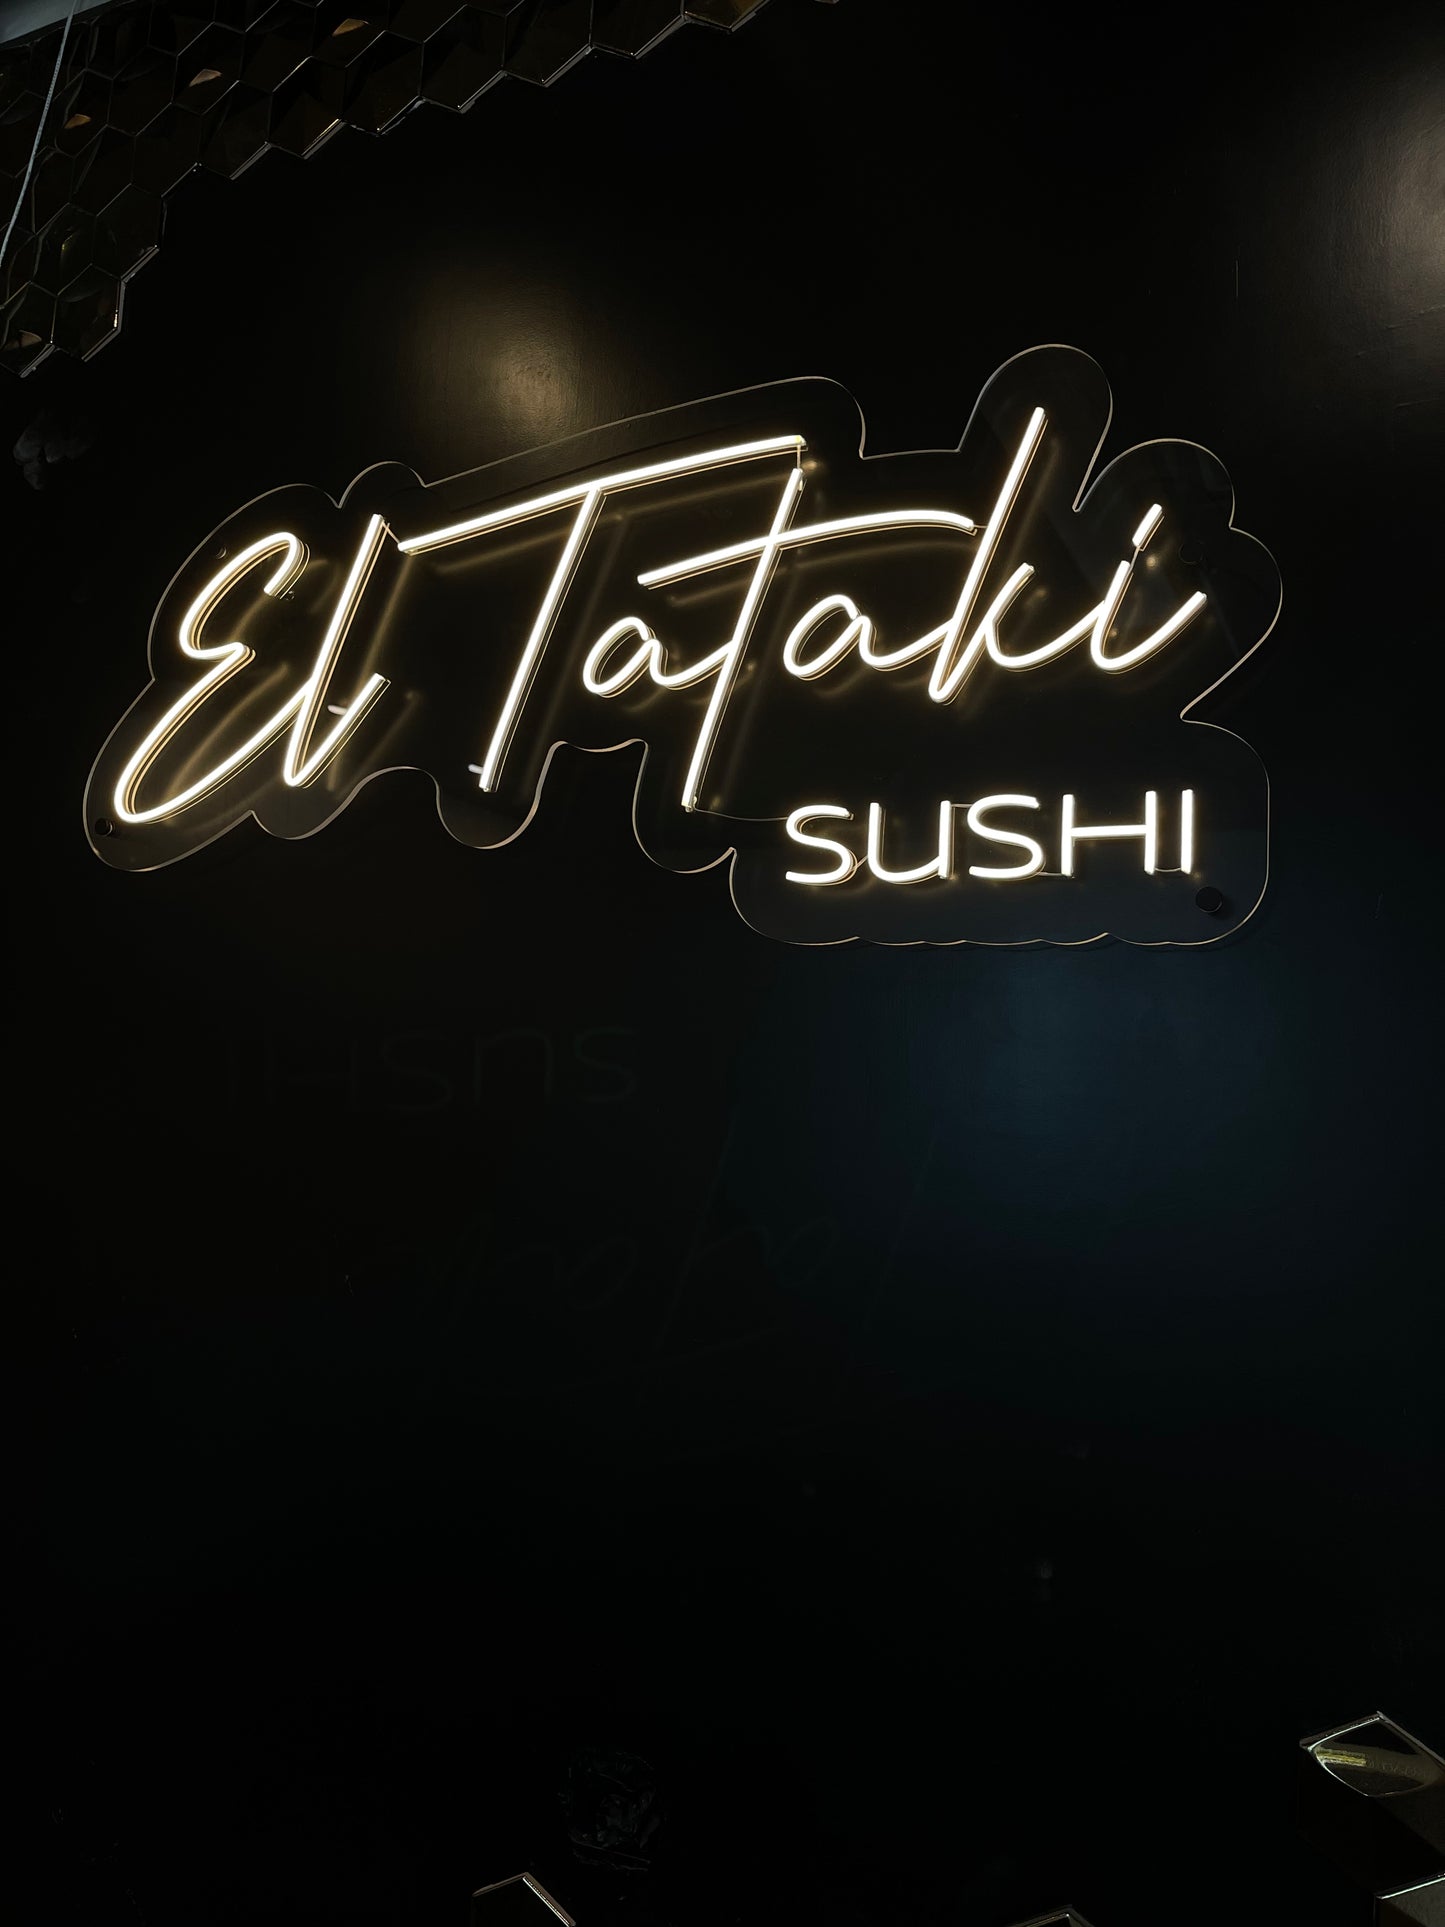 El Tataki Sushi